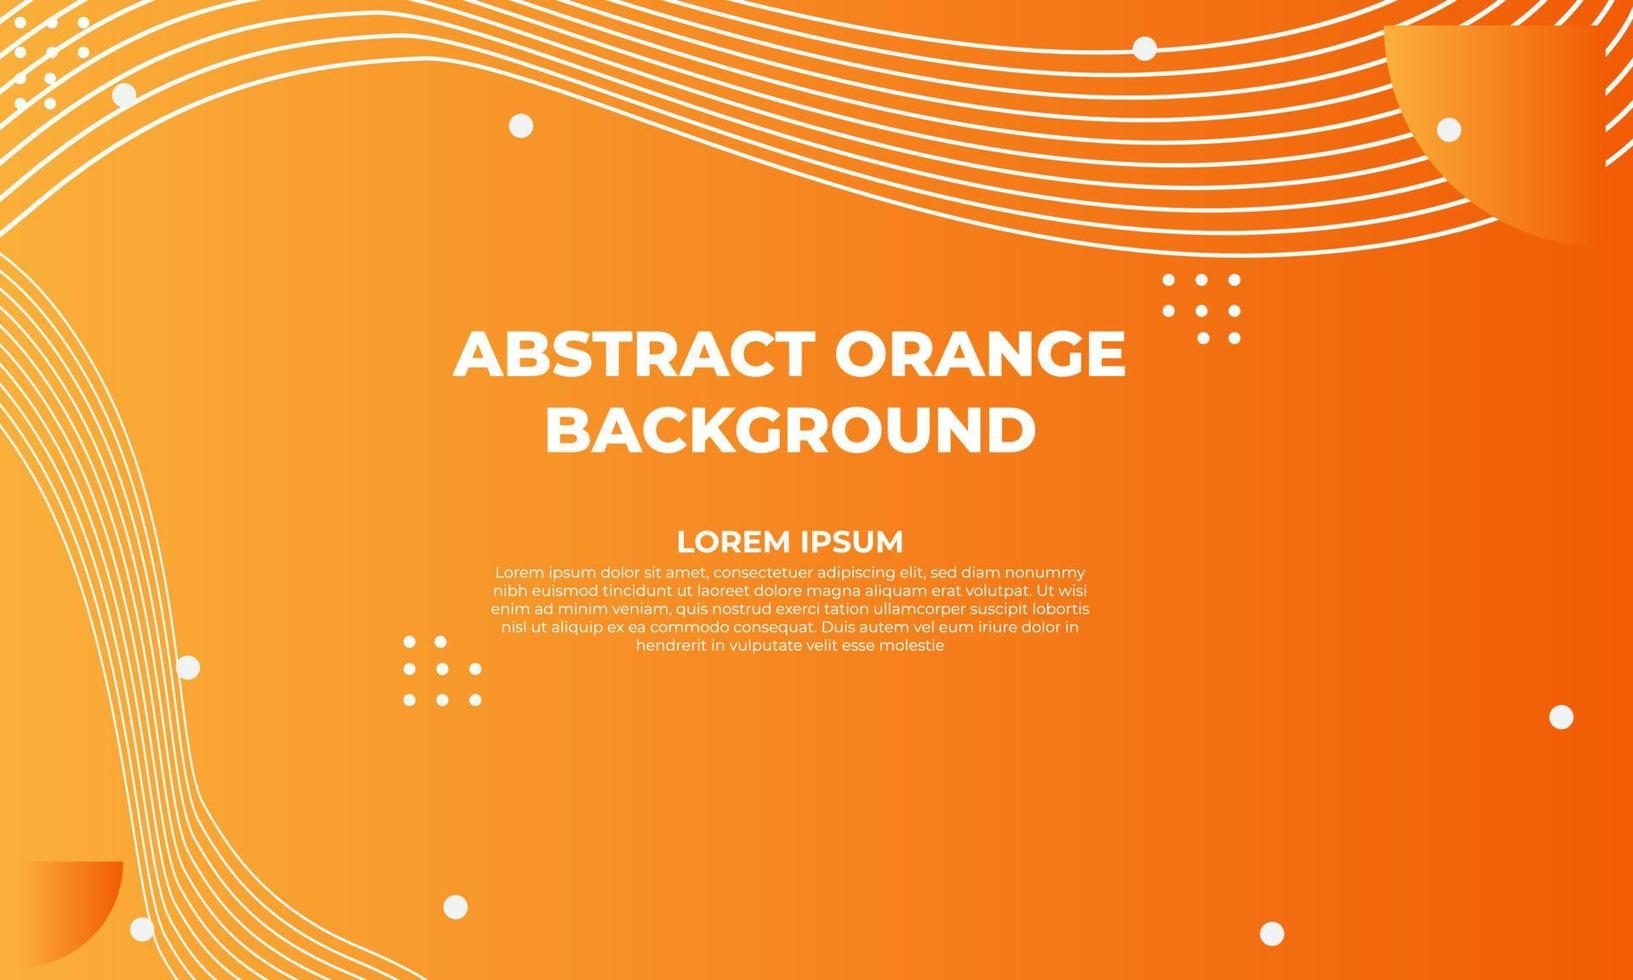 diseño de fondo geométrico plano naranja abstracto vector